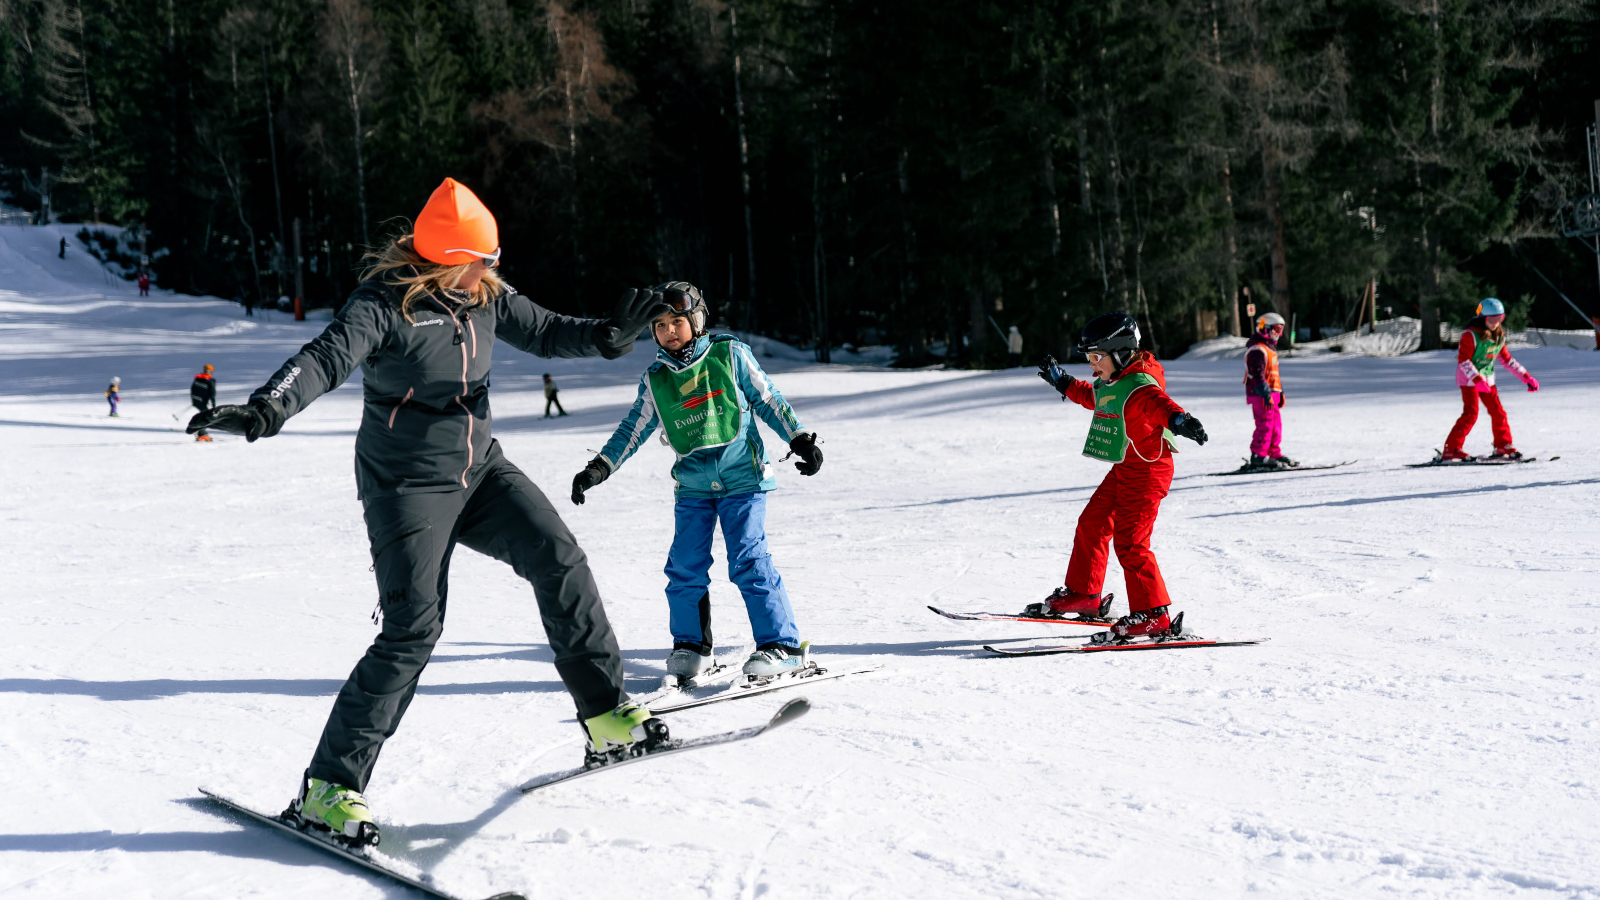 Evolution2-Chamonix-children-ski-course-intermediate